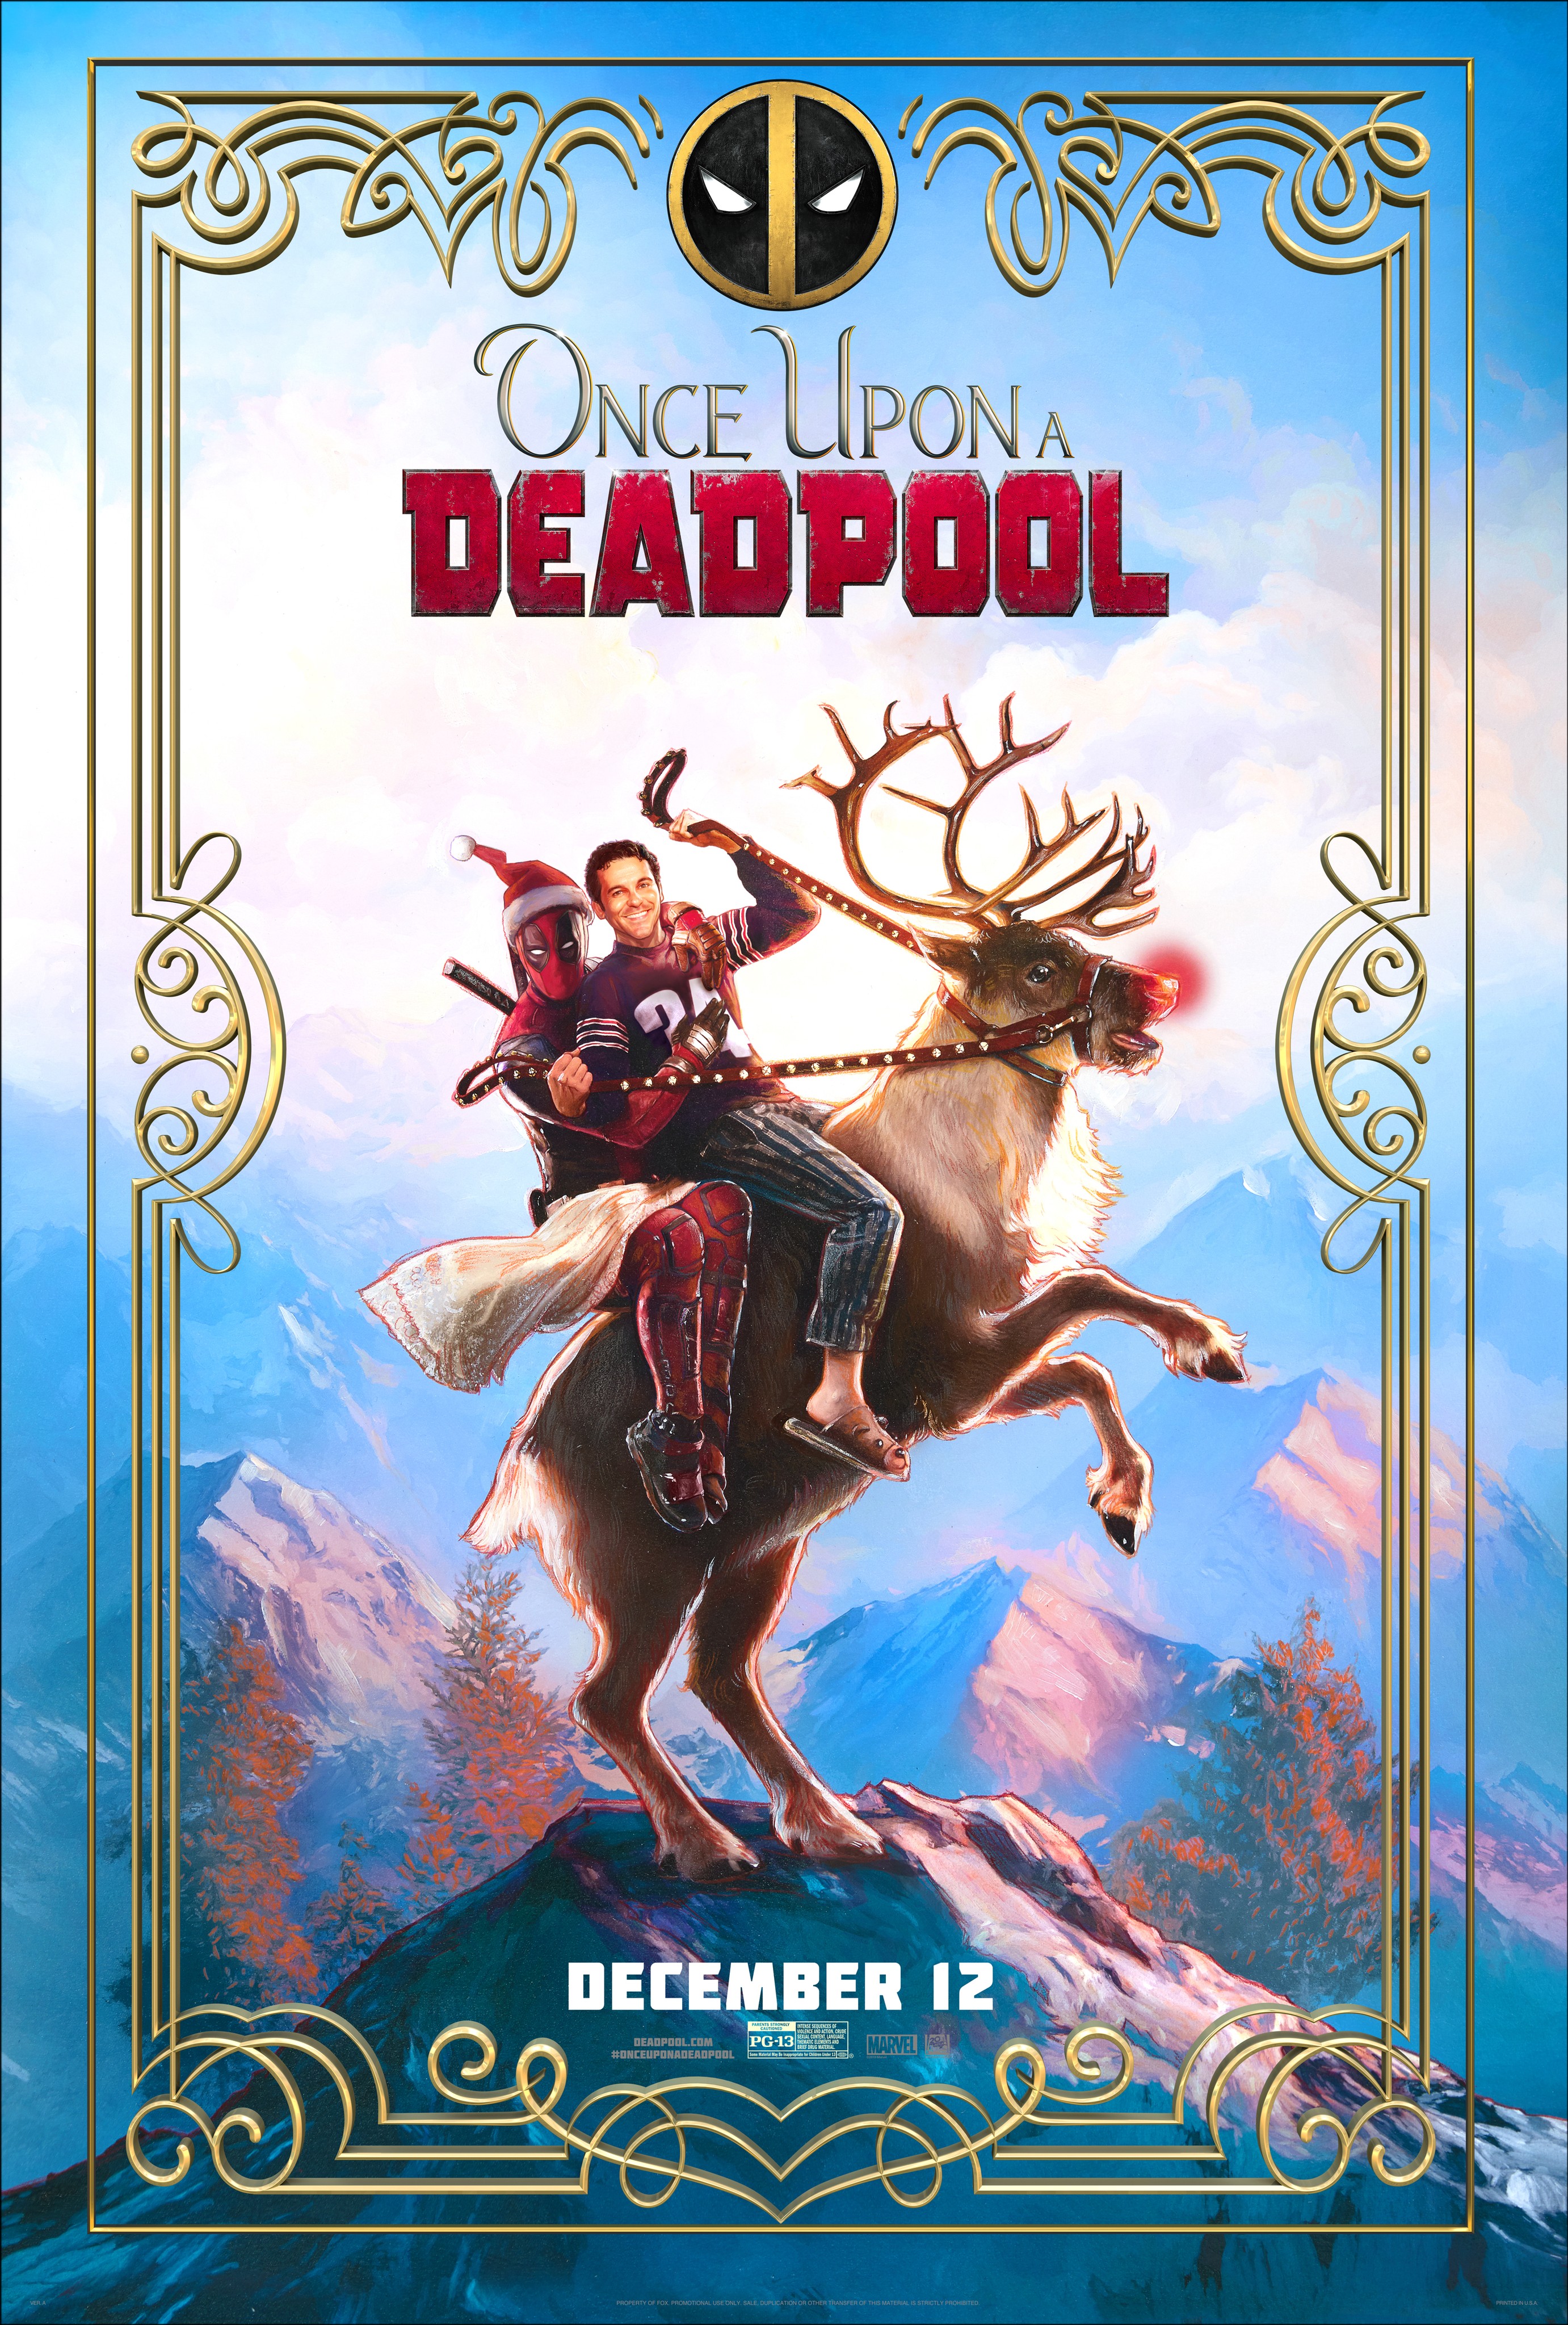 Deadpool (film) - Wikipedia